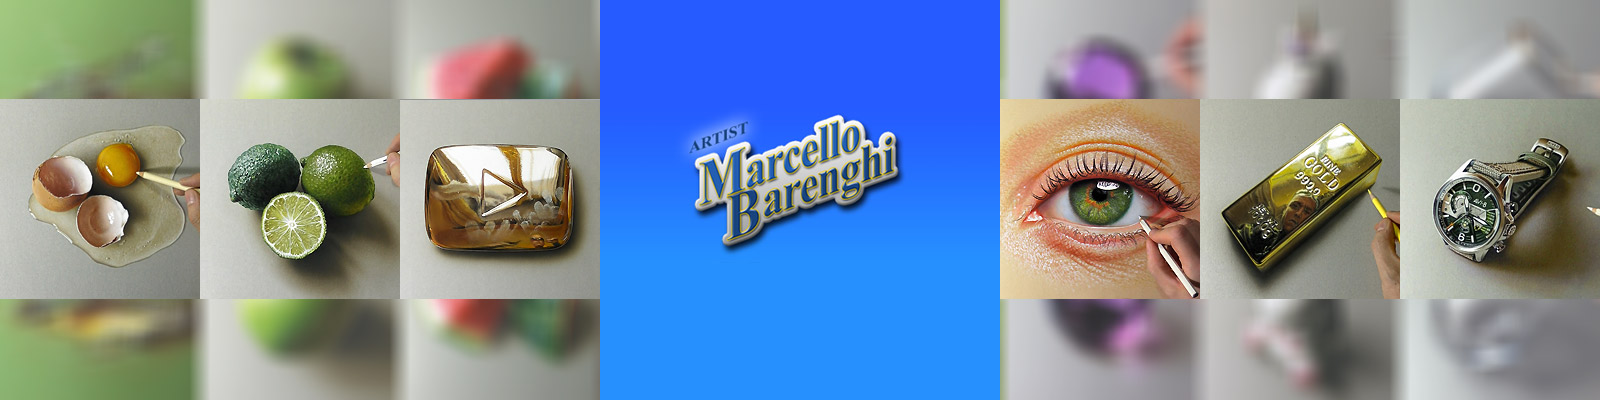 MarcelloBarenghi バナー